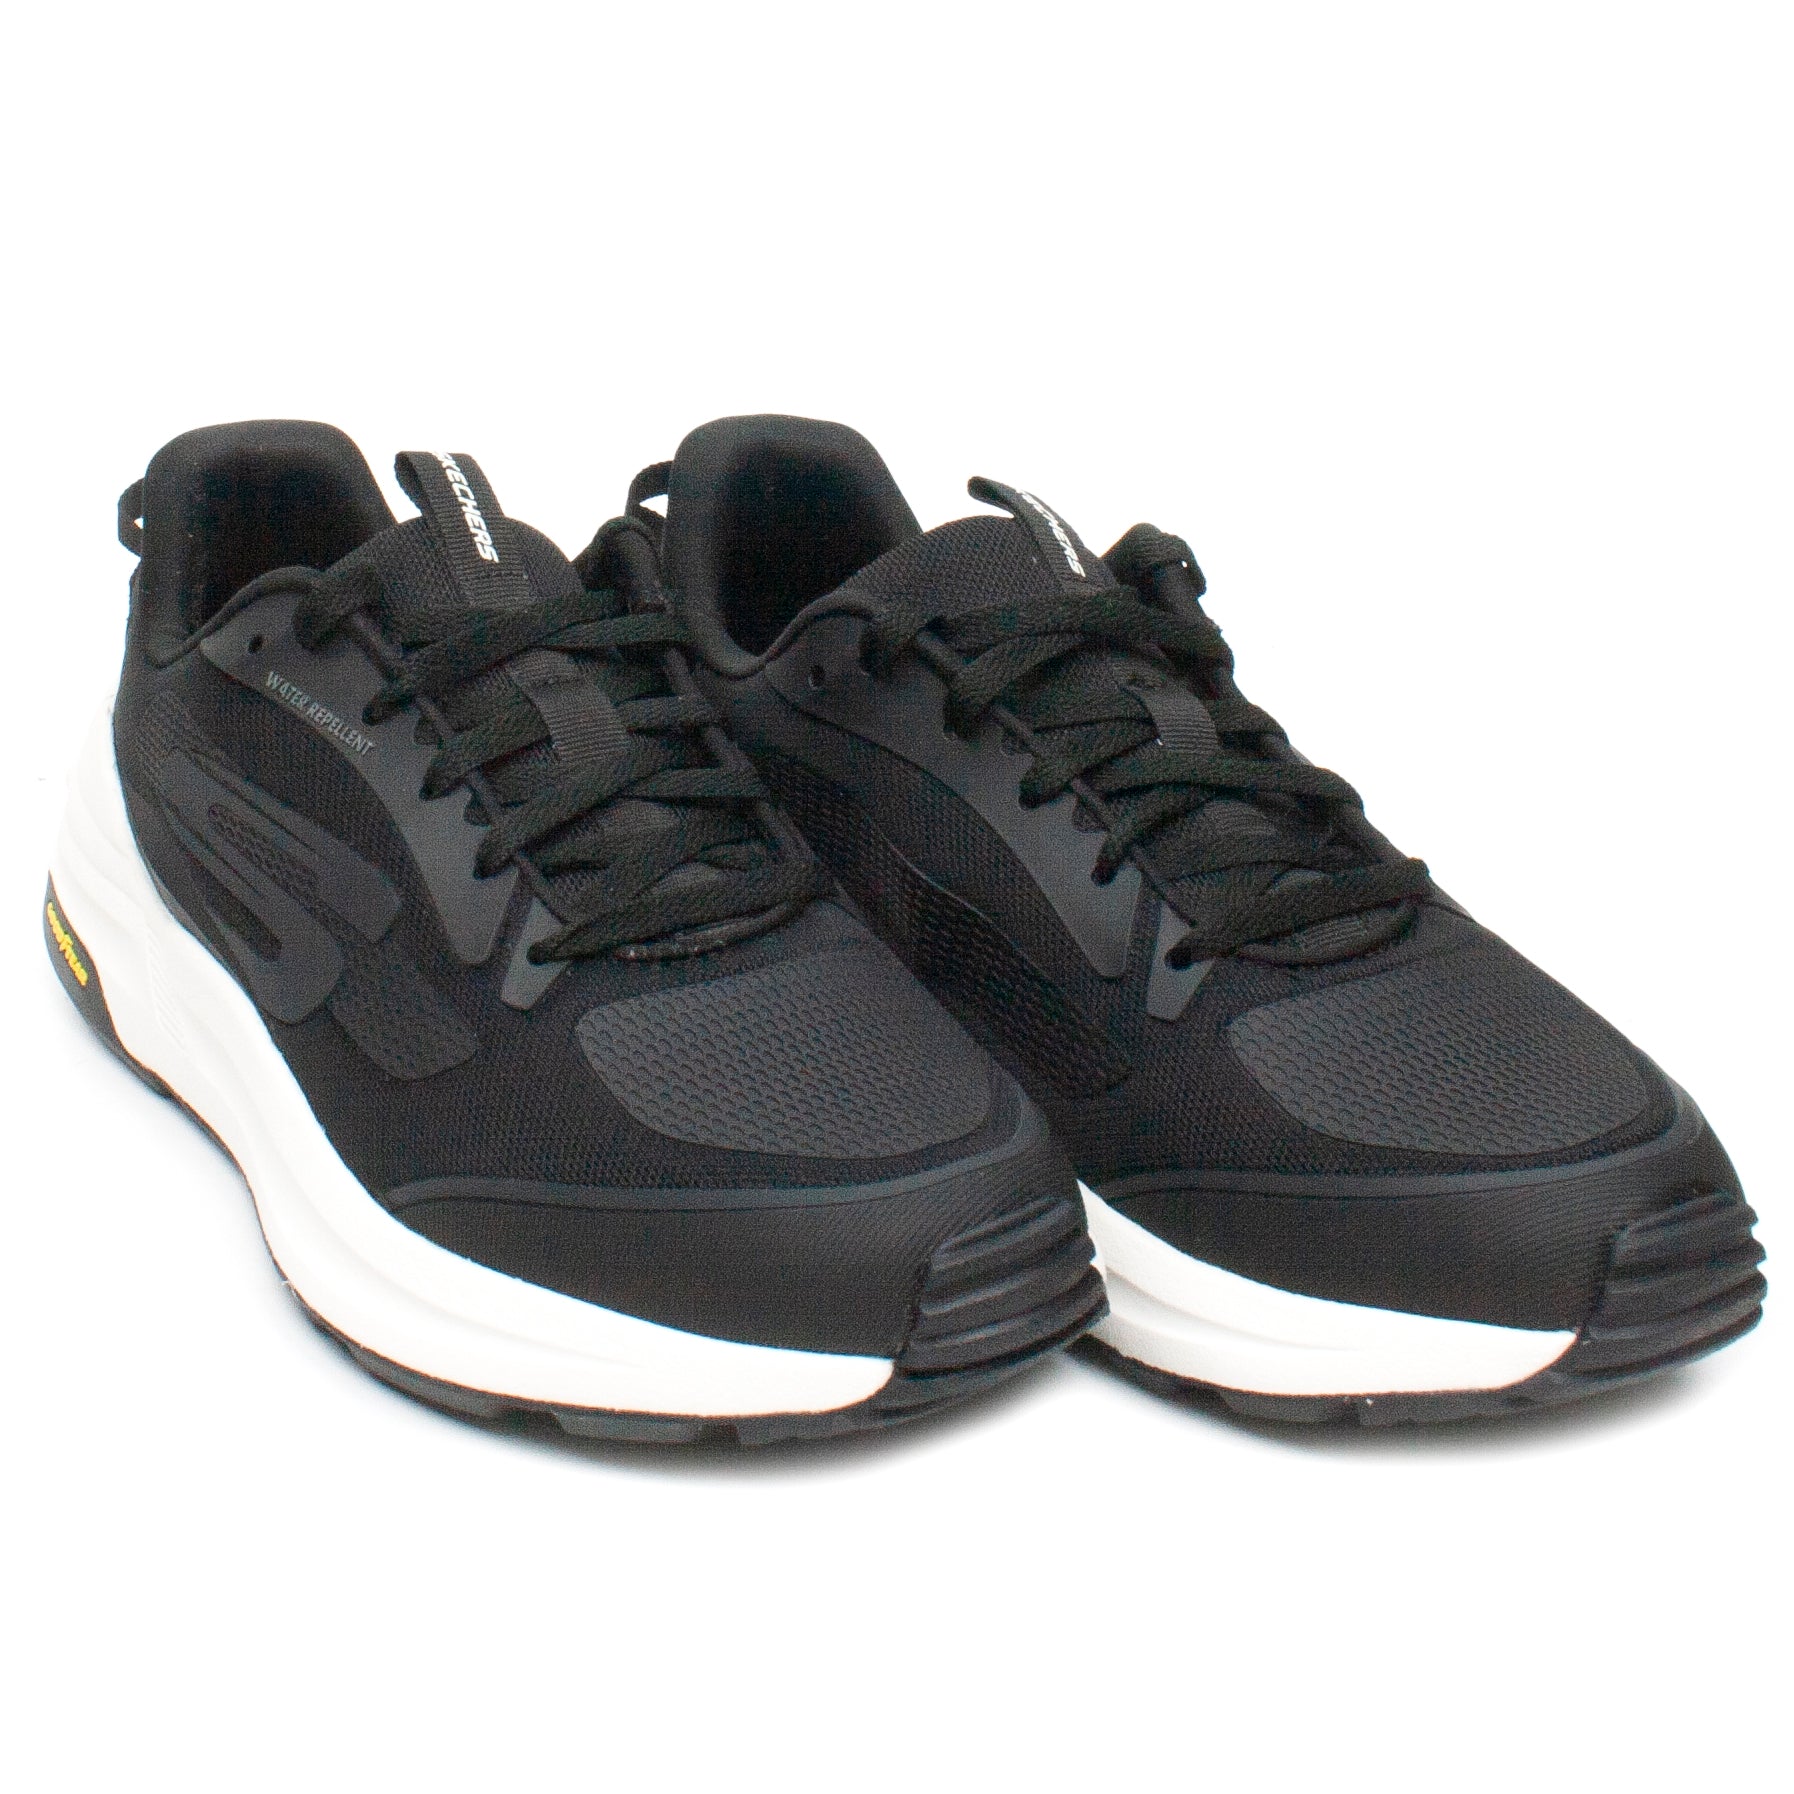 Skechers Pantofi barbati sport water repellent 237353 negru IB2251-NG